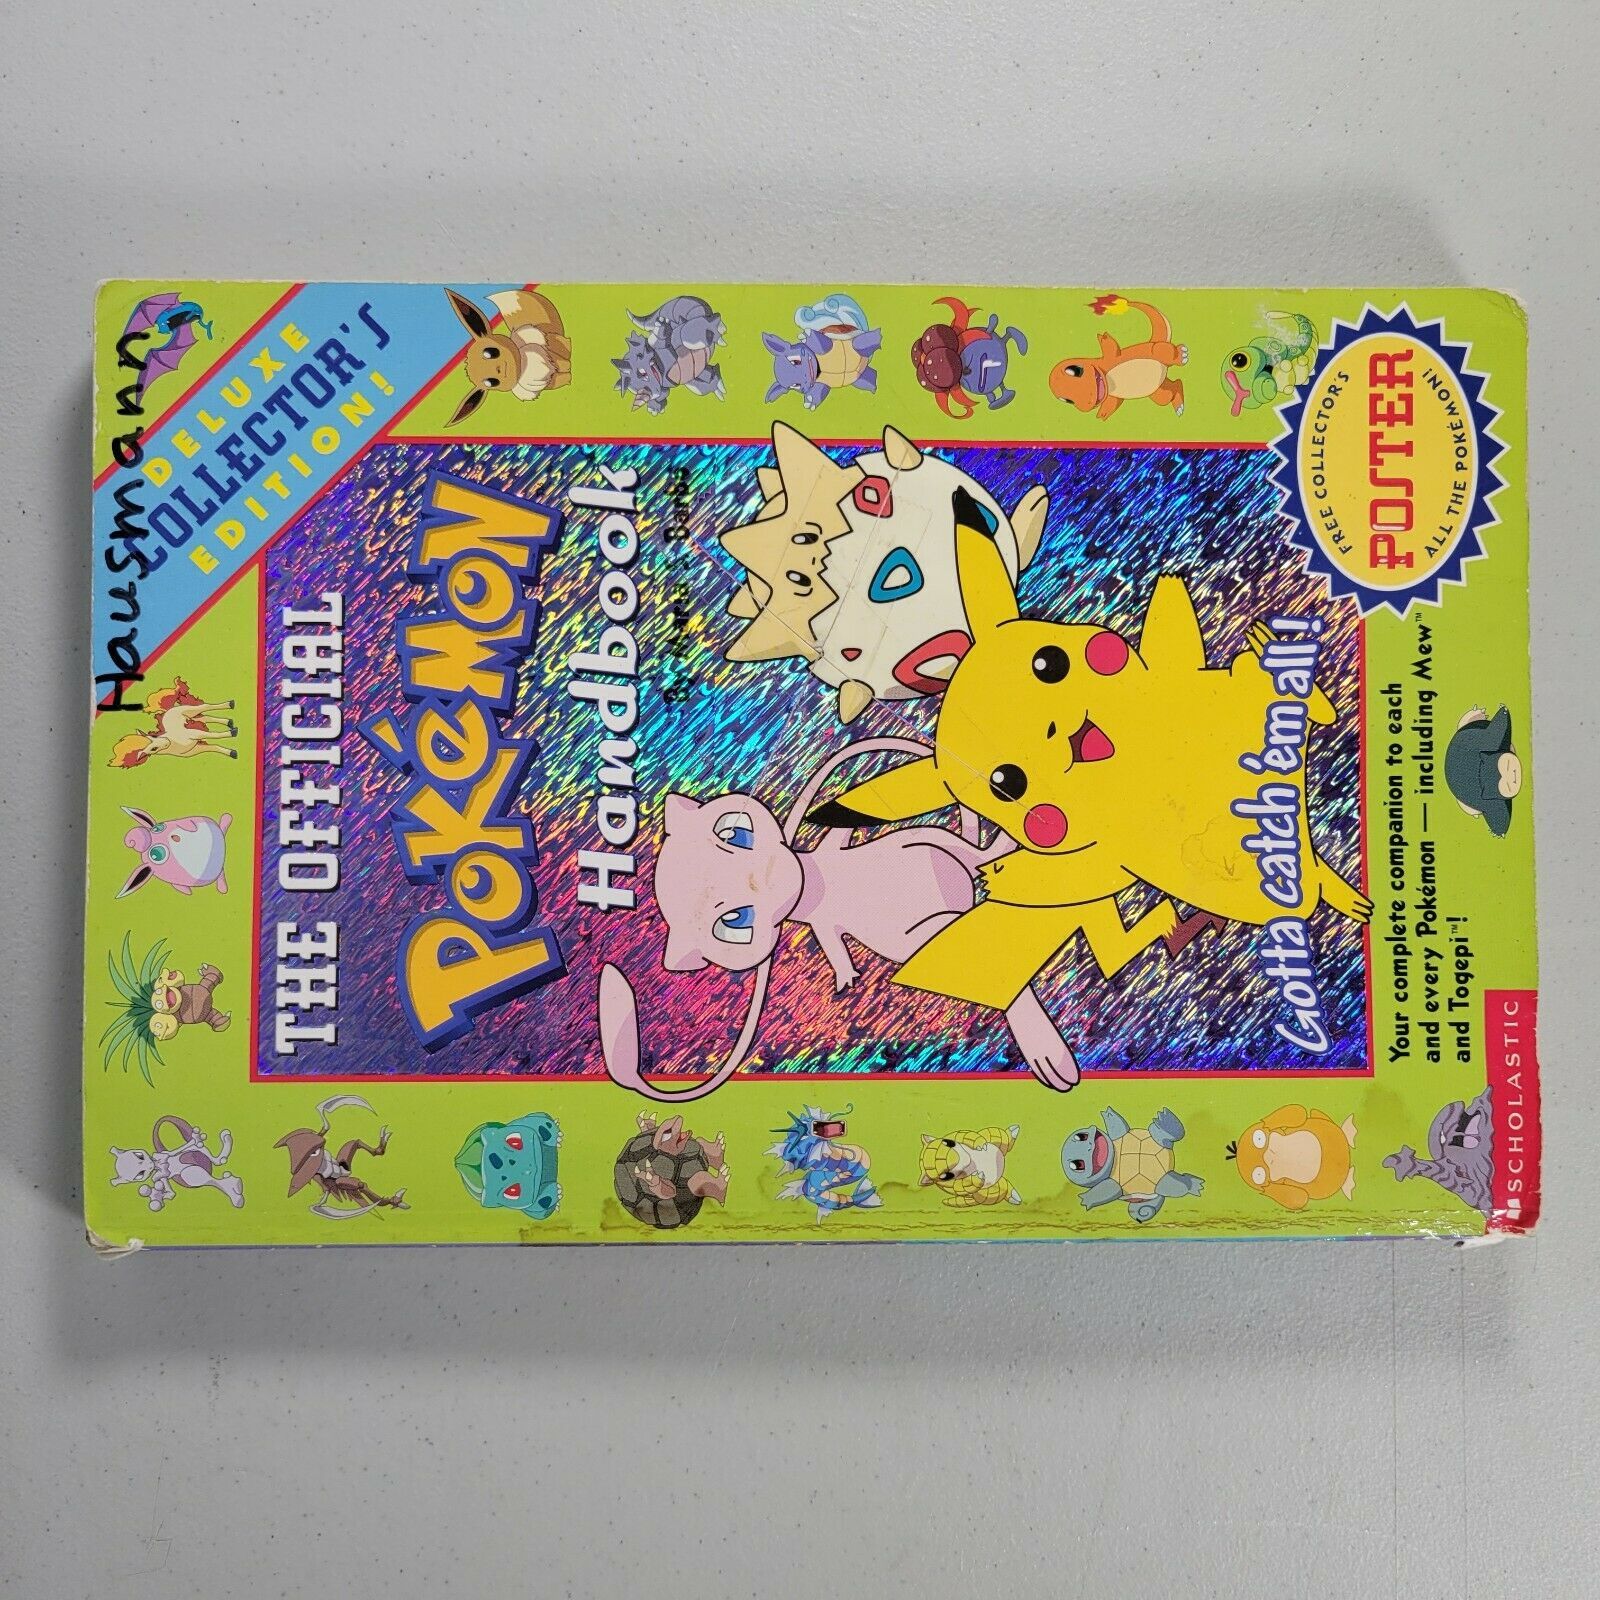 the official pokemon handbook #4